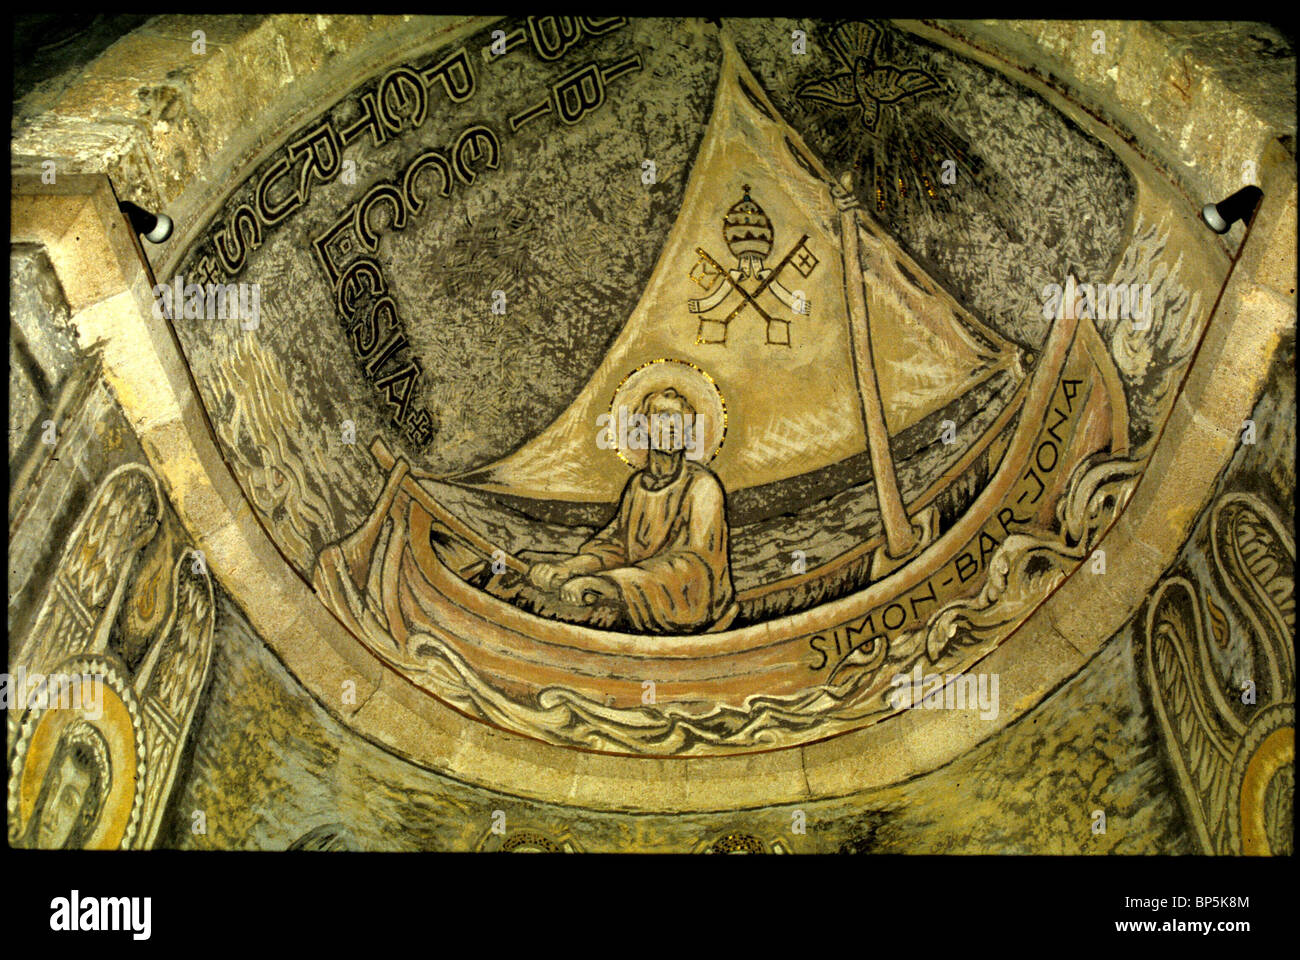 4899. Tiberiade, la chiesa di ST. Pietro presso il mare di Galilea. Affresco raffigurante ST. Pietro sul mare tempestoso DELLA GALILEA Foto Stock